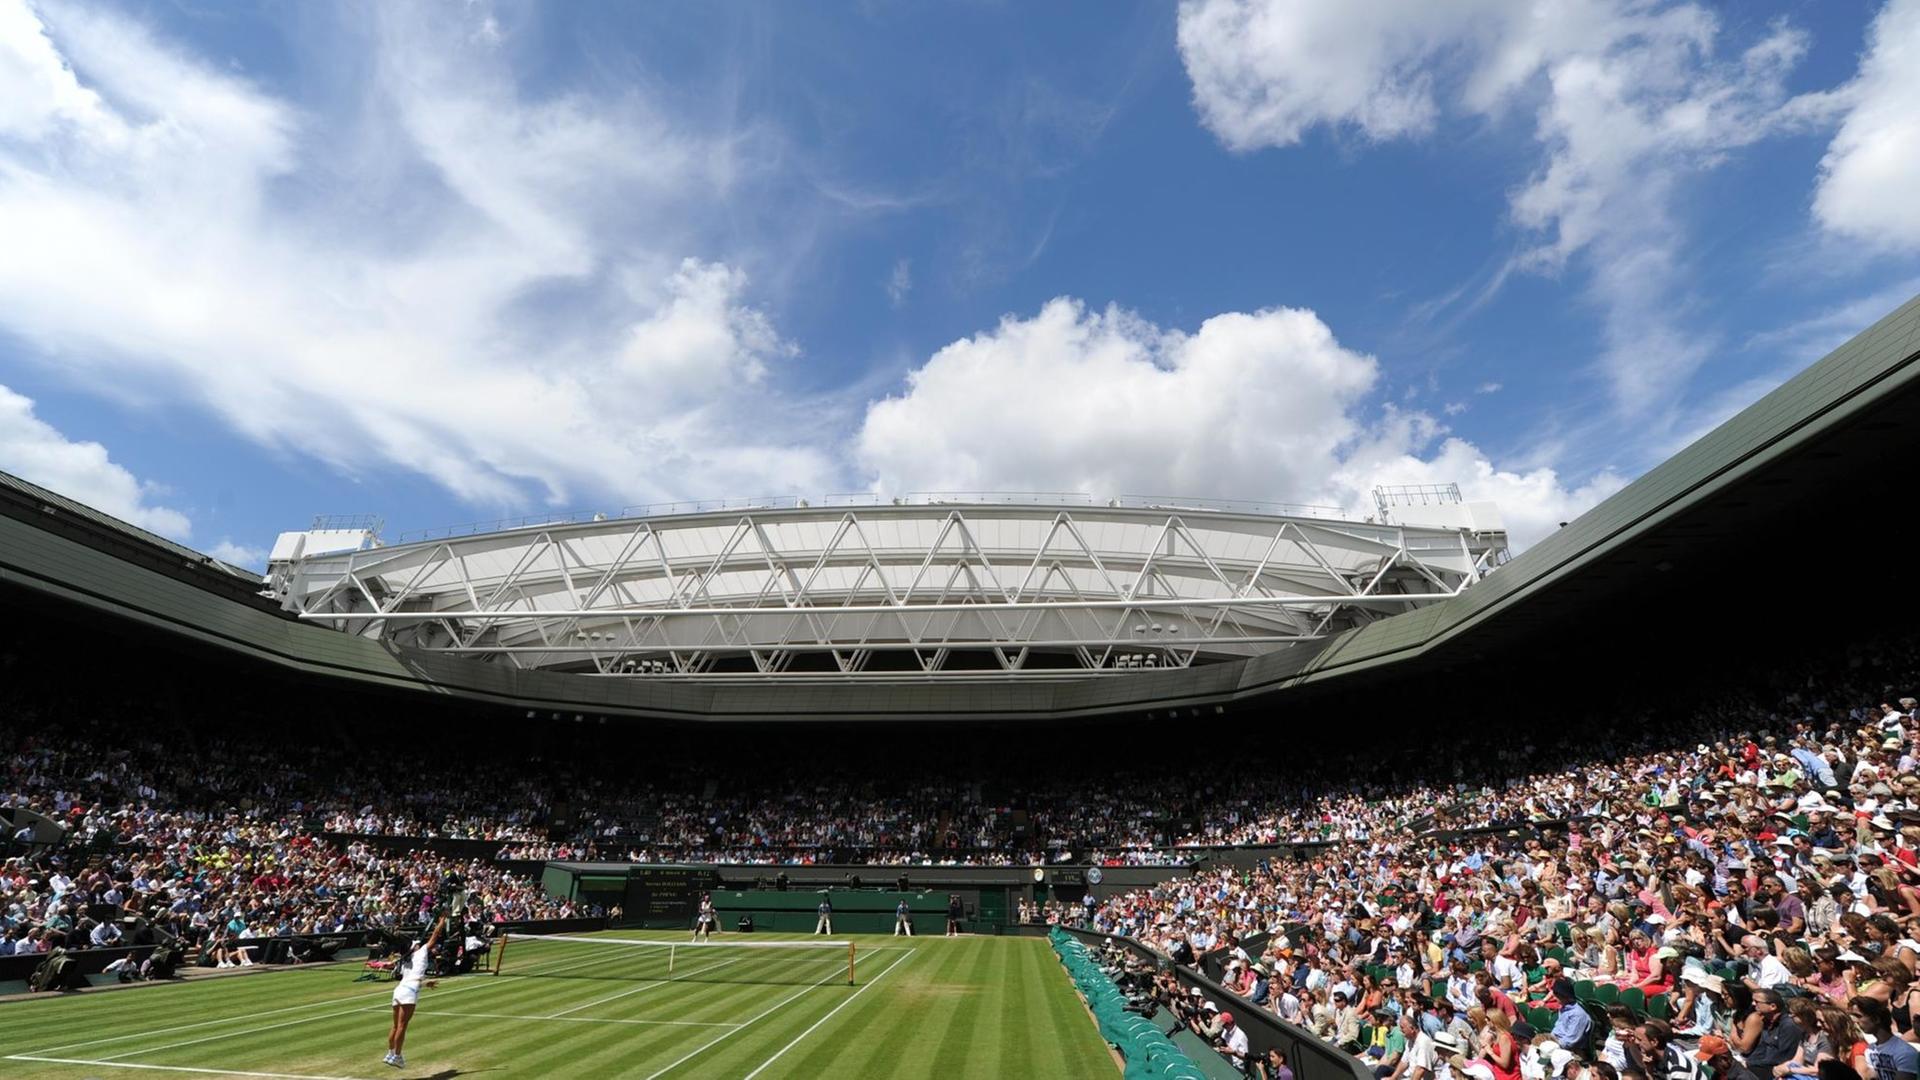 Blick auf den Rasen-Platz im Stadion von Wimbledon bei schönem Wetter.